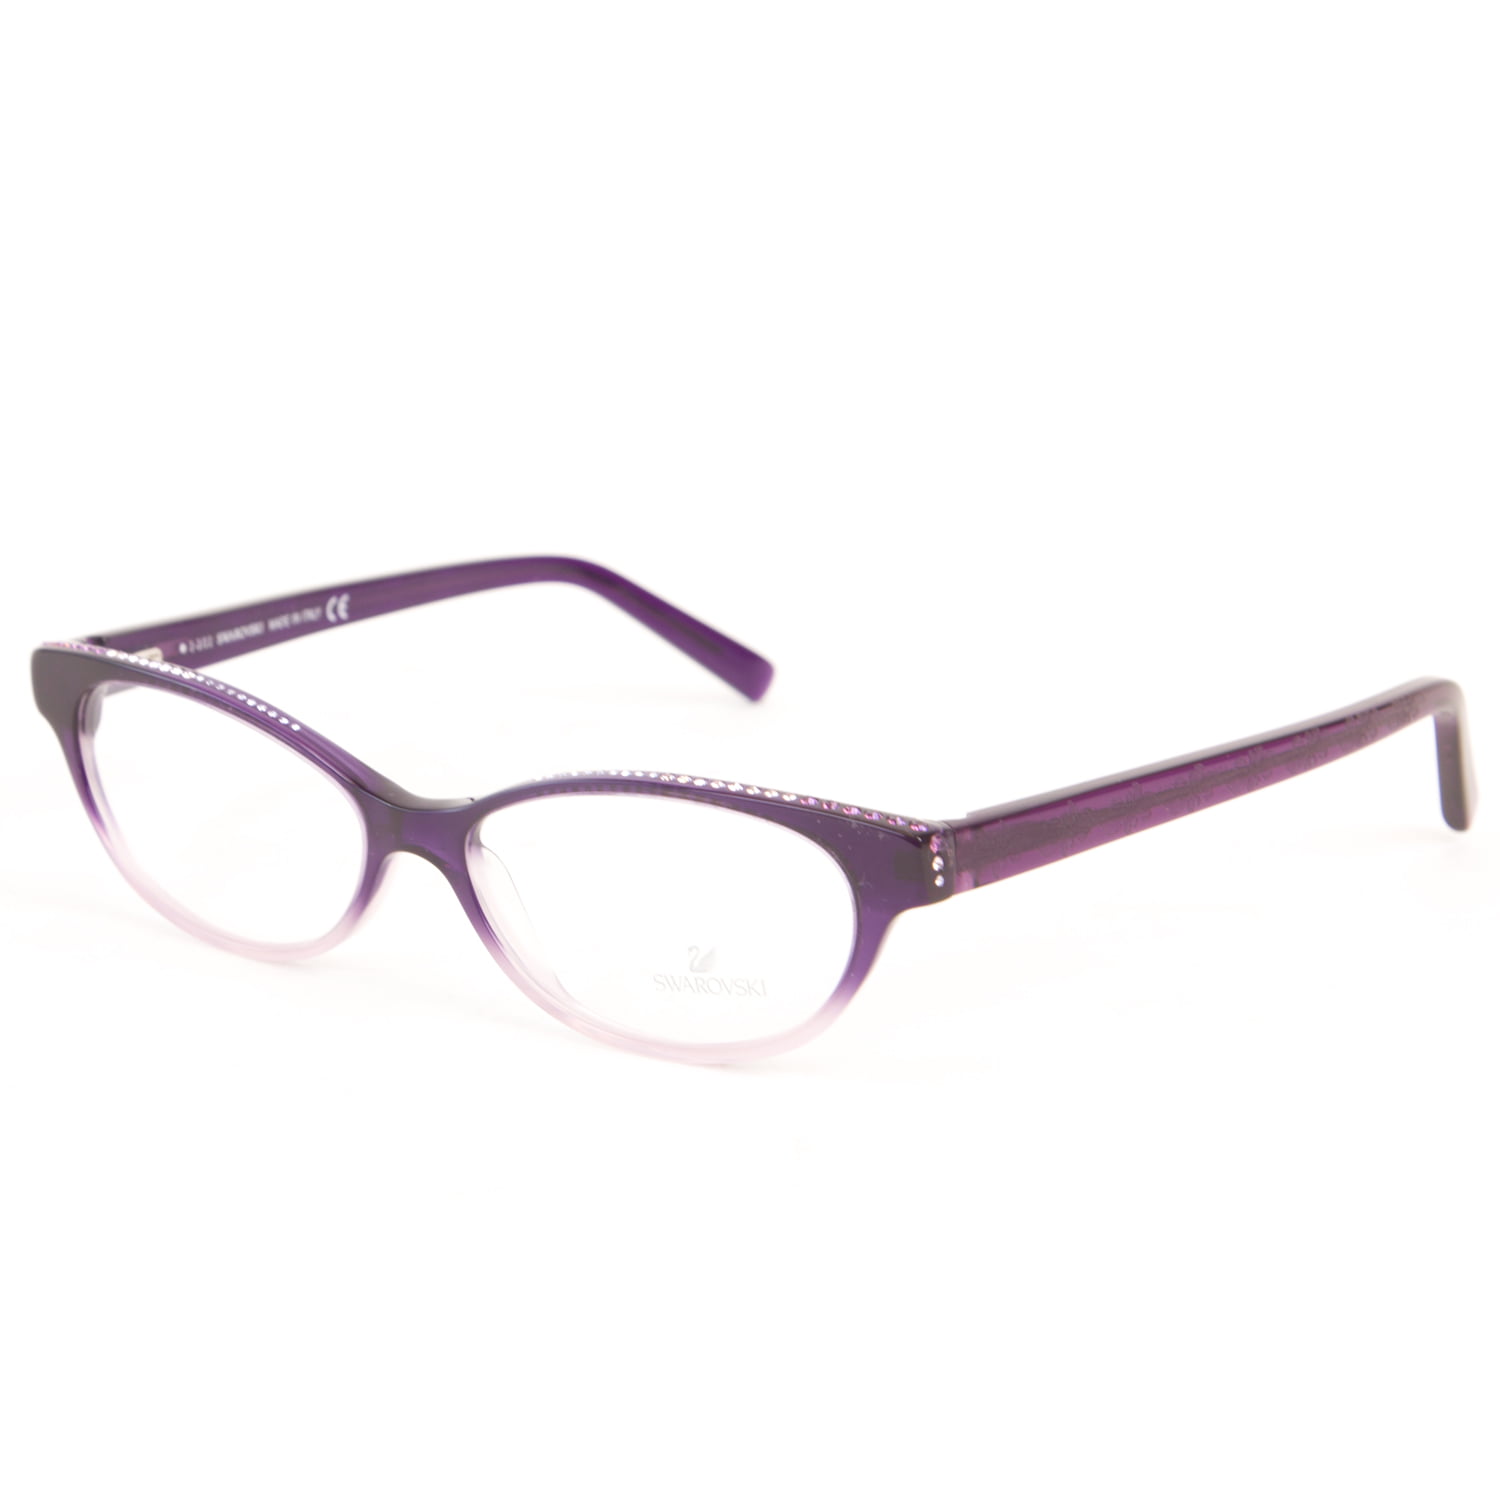 Swarovski Swarovski Women S Crystal Accent Cateye Eyeglass Frames